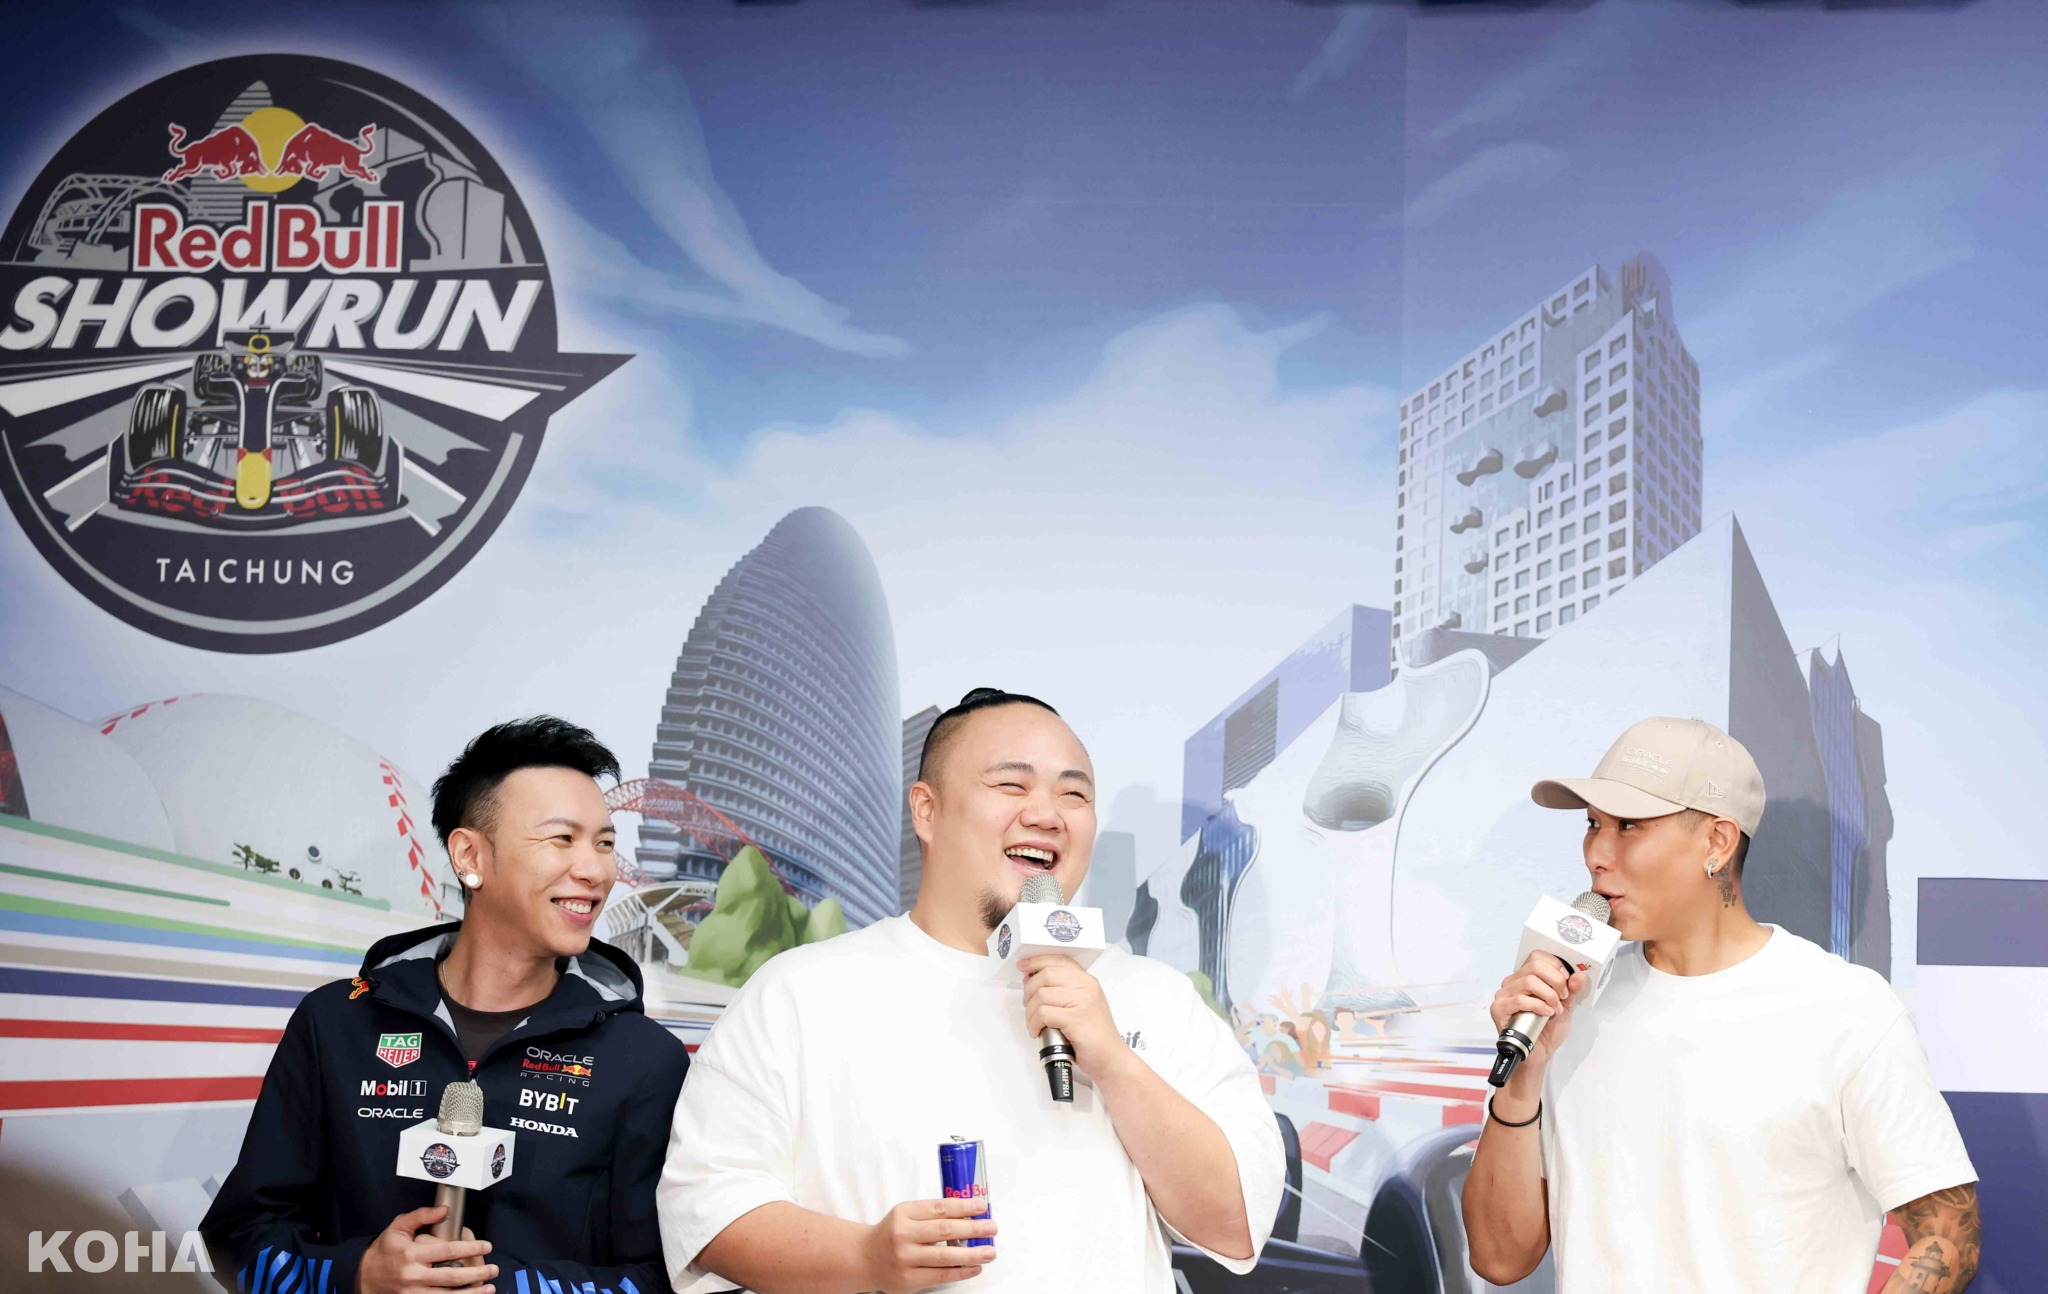 頑童MJ116 為 Red Bull Showrun Taichung 量身打造主題曲，將收錄於新專輯並將於9 28活動獻唱。（Red Bull 提供）